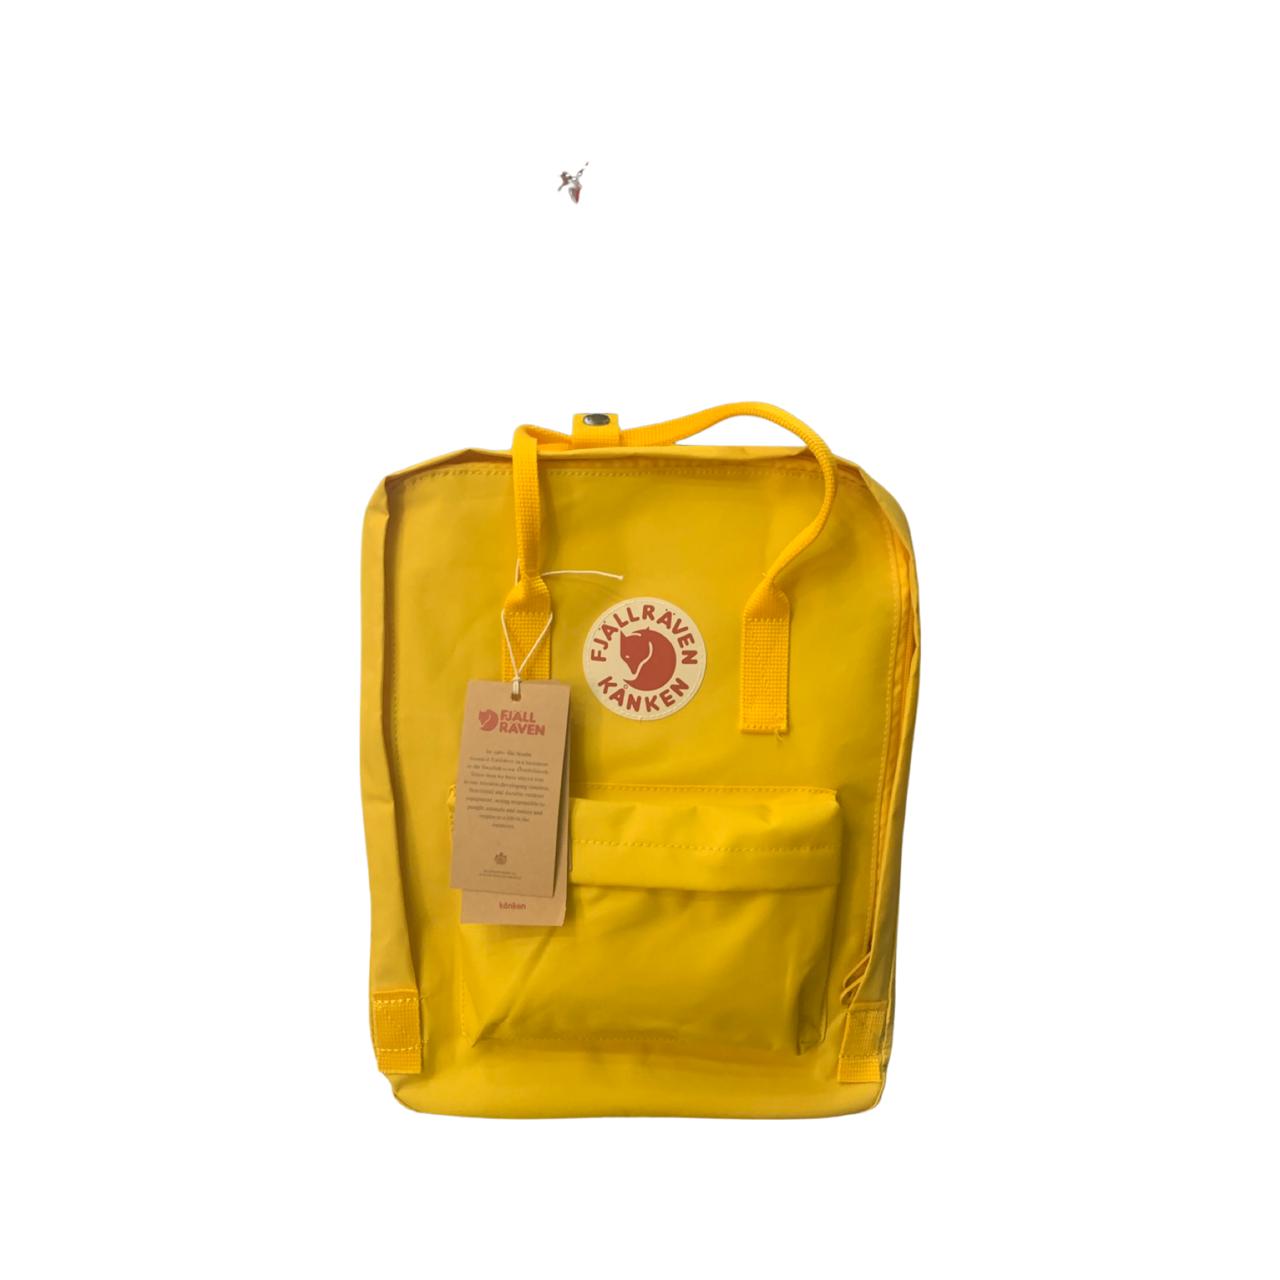 Kanken Original Backpack - Yellow - Fragrance Deliver SA